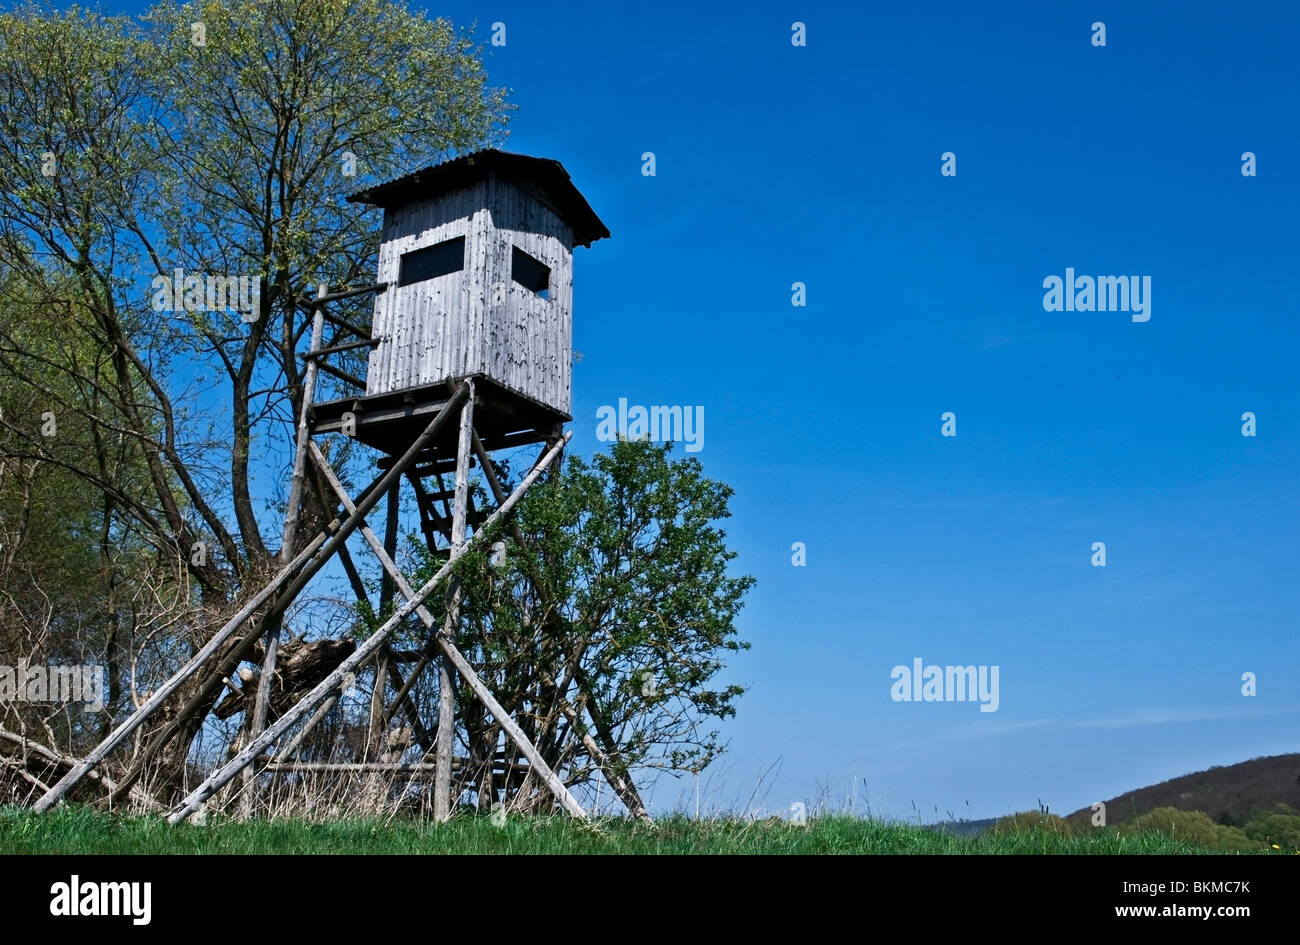 Paysage allemand montrant une tour pour observer les oiseaux, entouré d'arbres dans une vallée contre le ciel bleu Banque D'Images